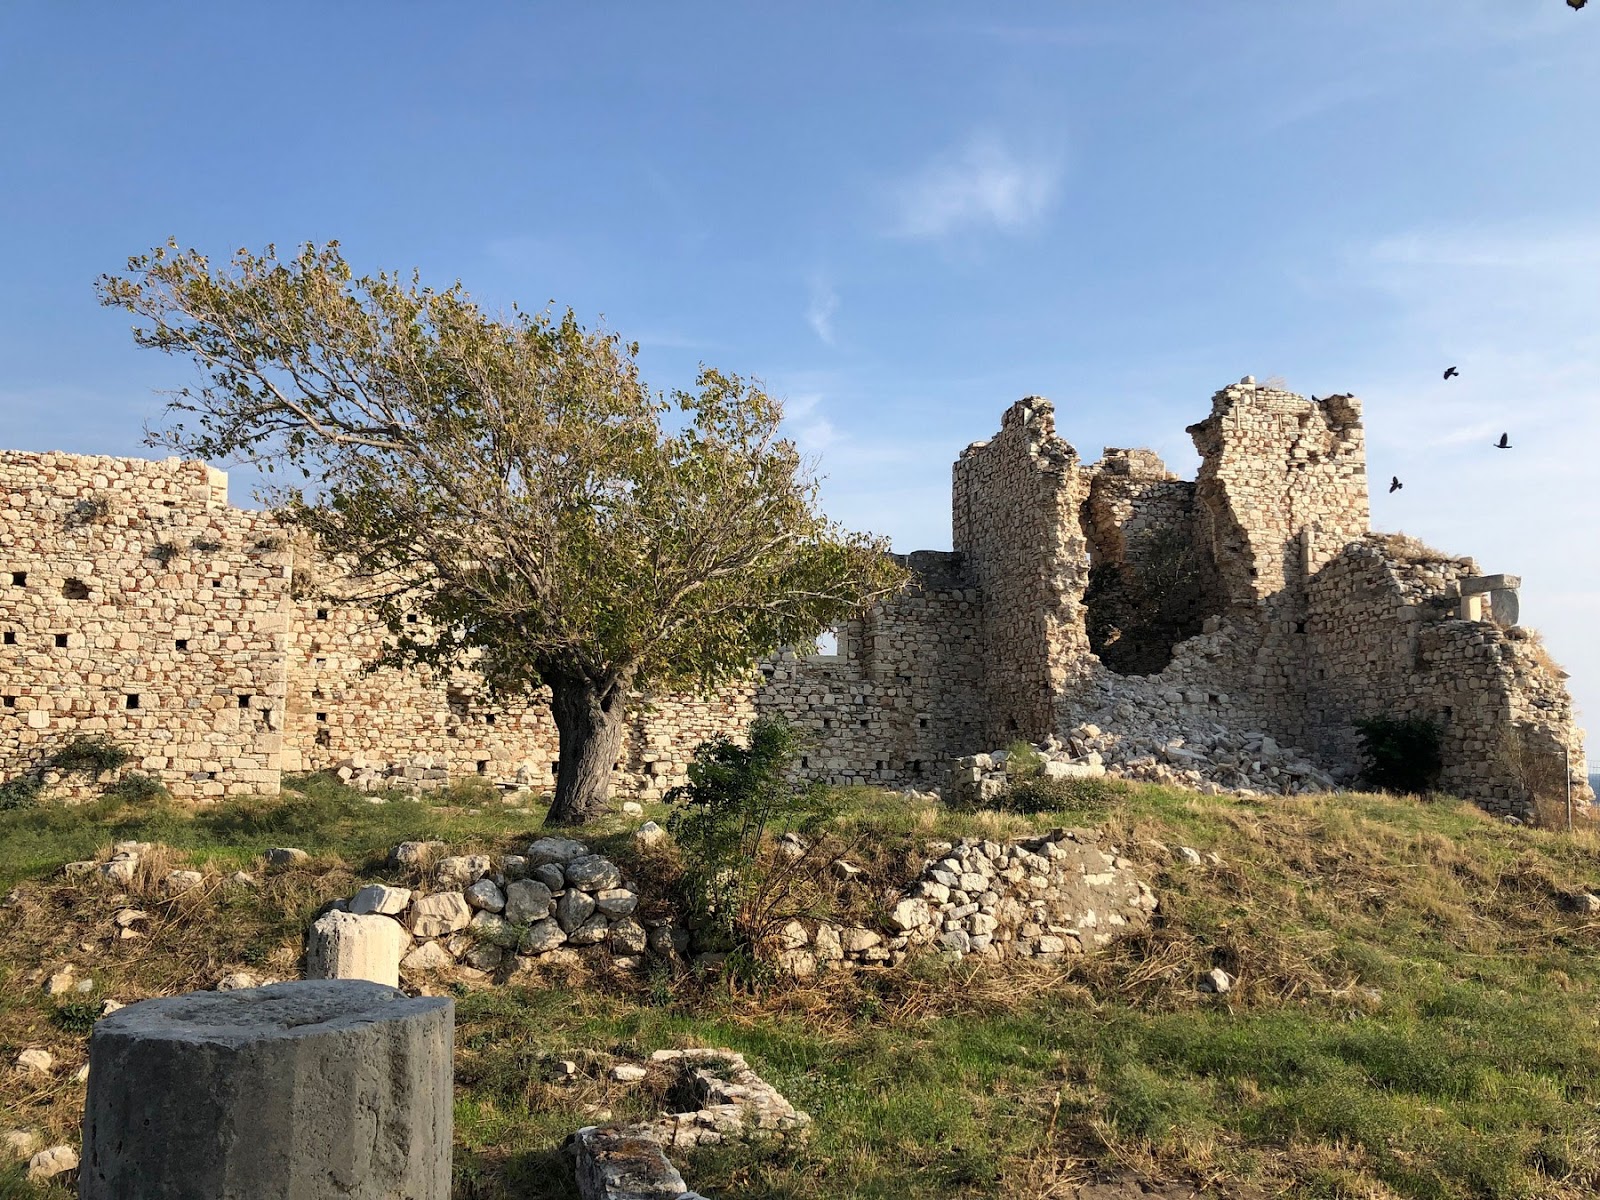 Τμήματα τειχών του βυζαντινού κάστρου στο Πυθαγόρειο της Σάμου, που κατέρρευσαν μετά τον σεισμό του 2020. [Credit: ΥΠΠΟ]